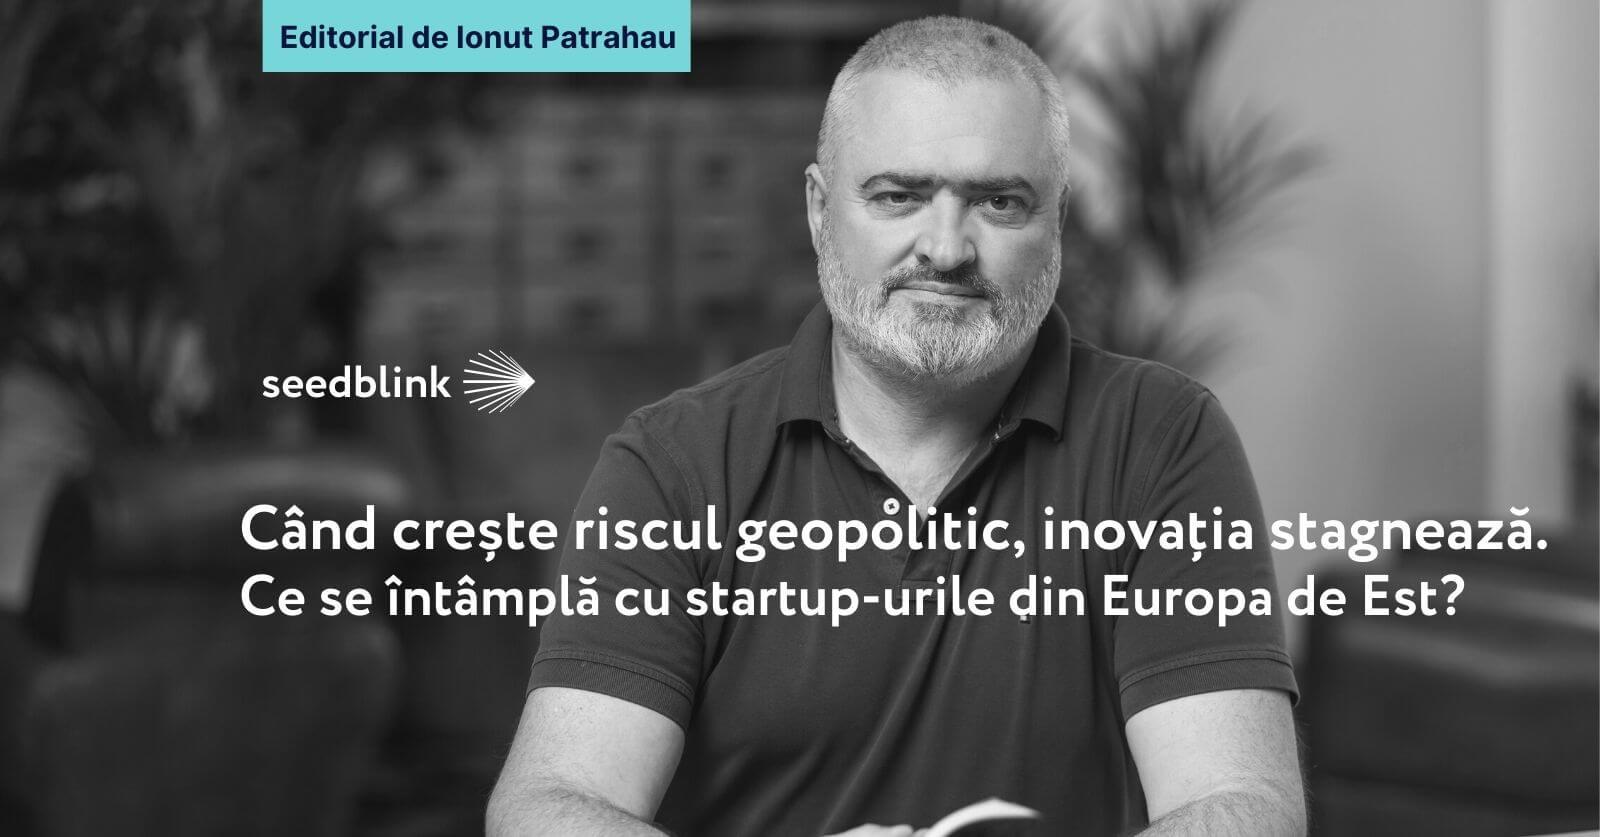 Când crește riscul geopolitic, inovația stagnează. Ce se întâmplă cu startup-urile din Europa de Est?